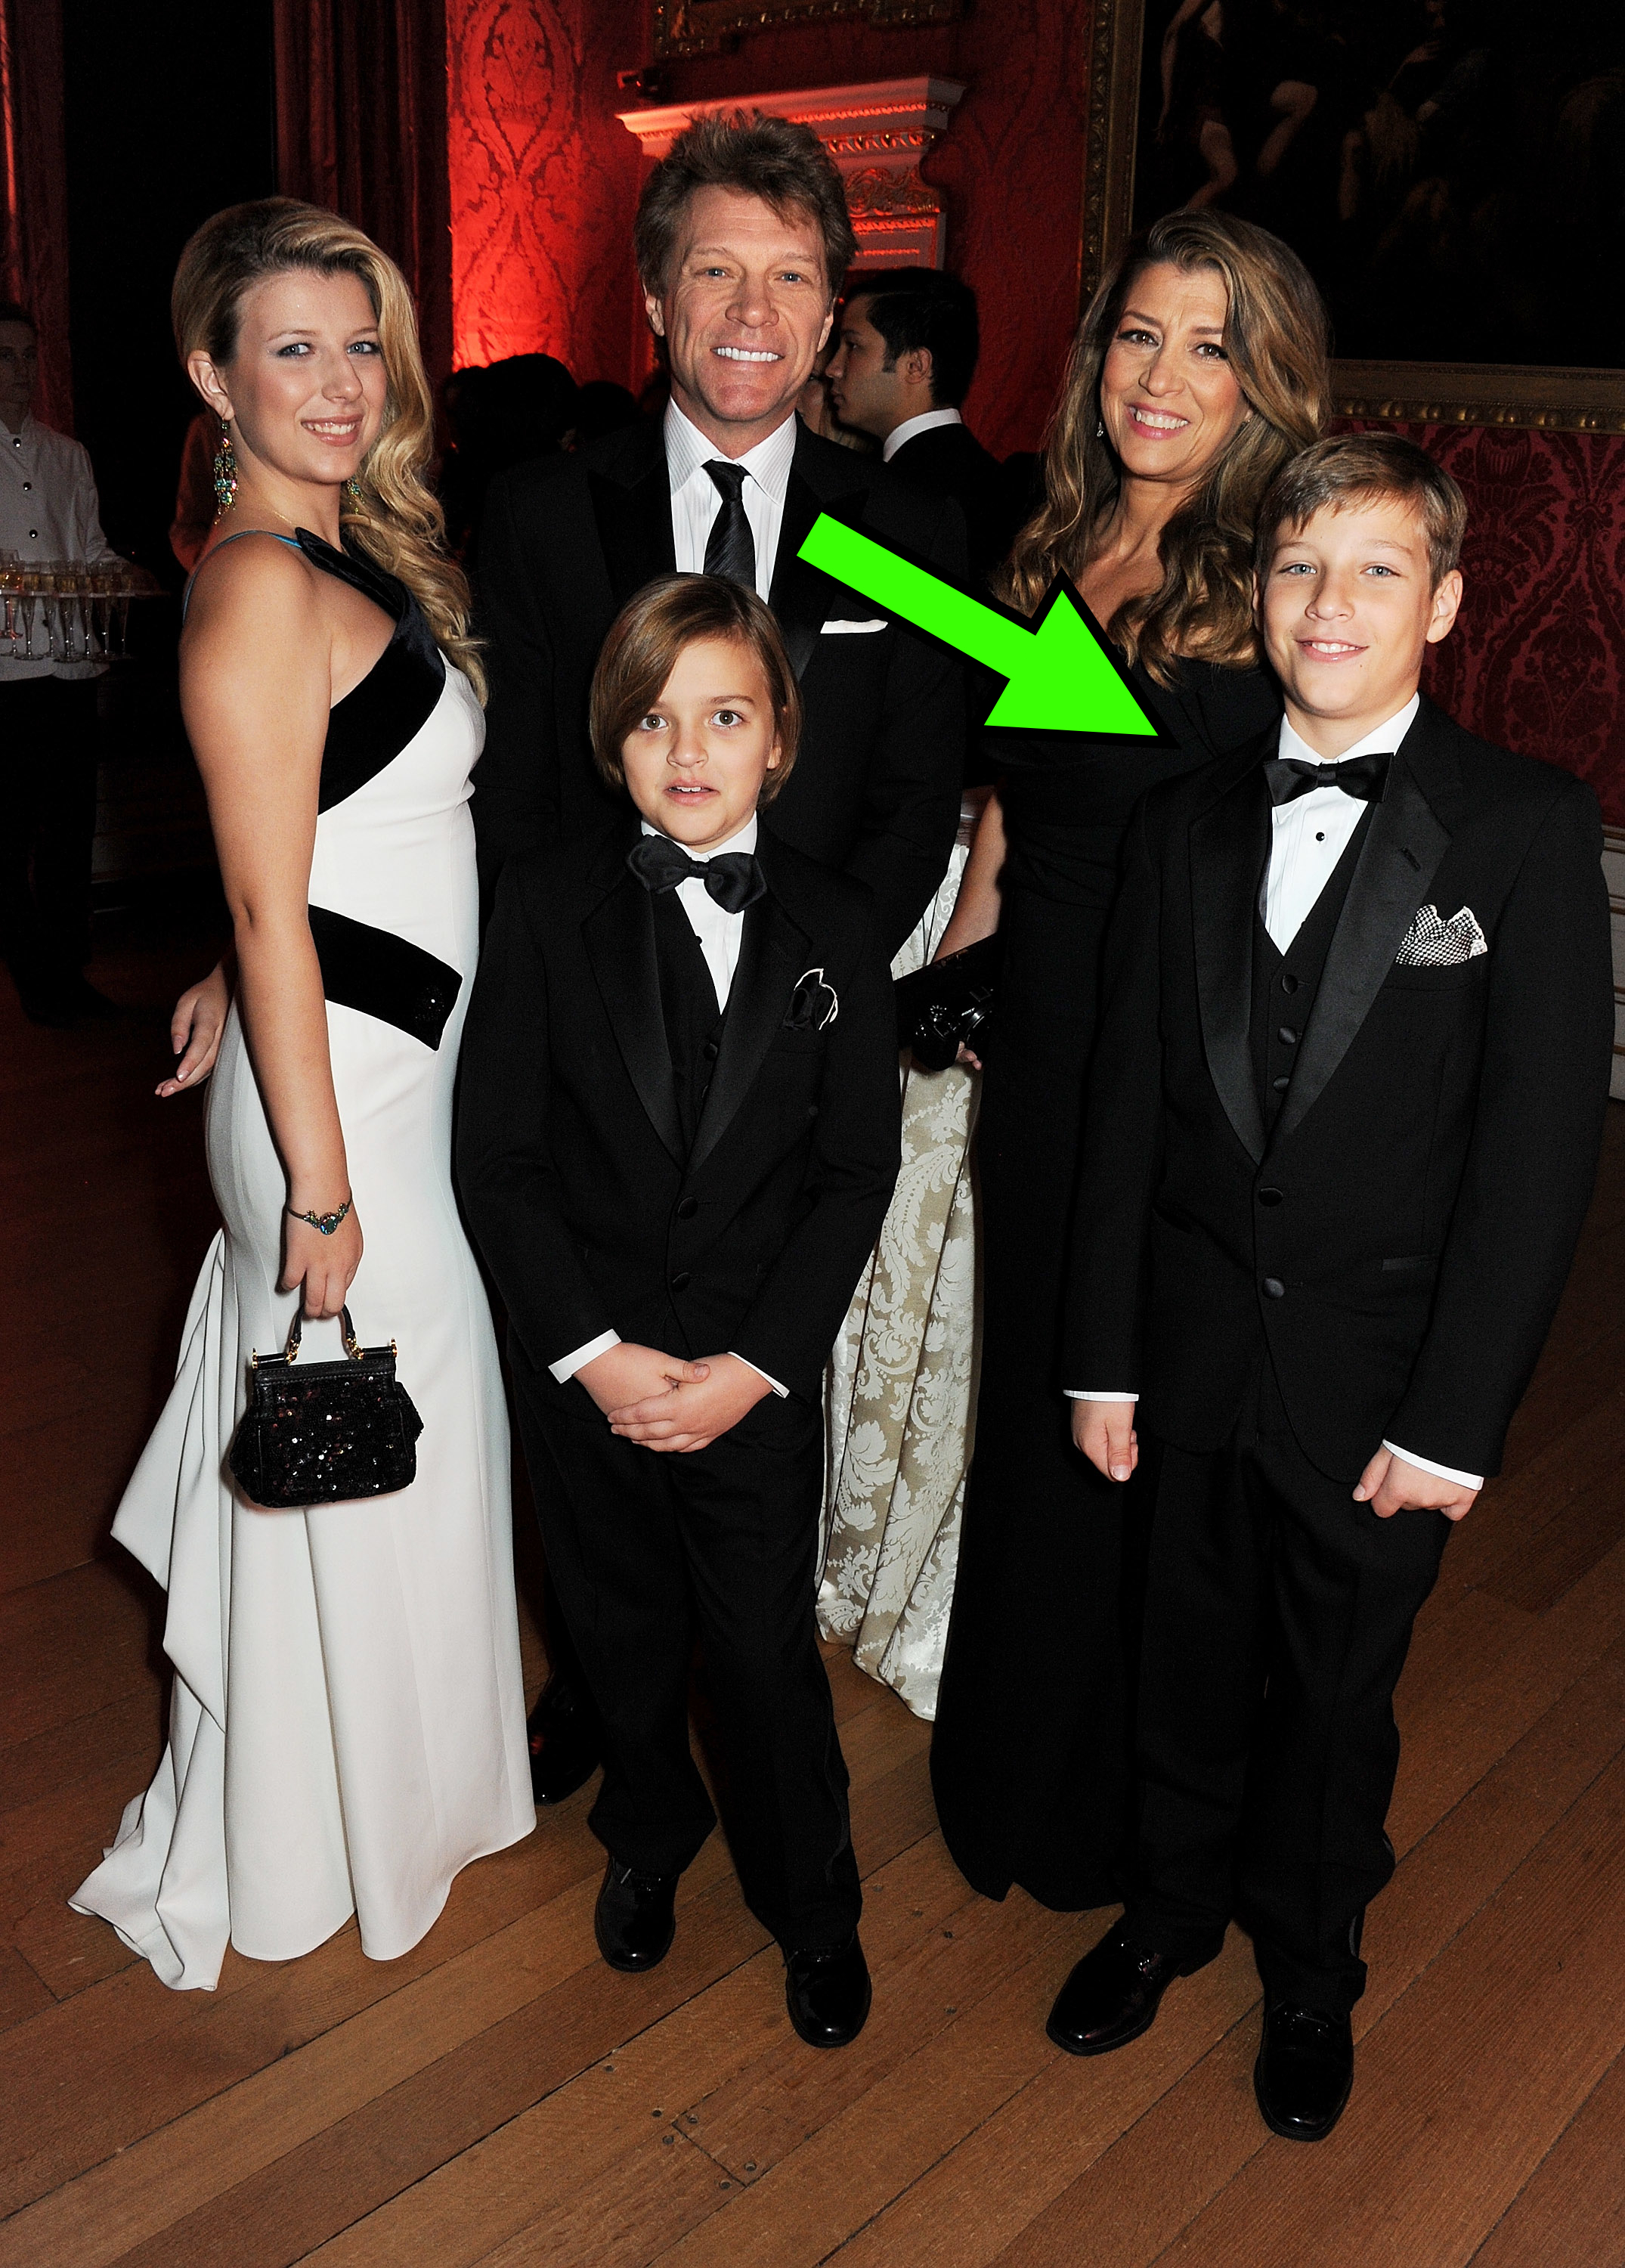 Jon Bon Jovi with his family